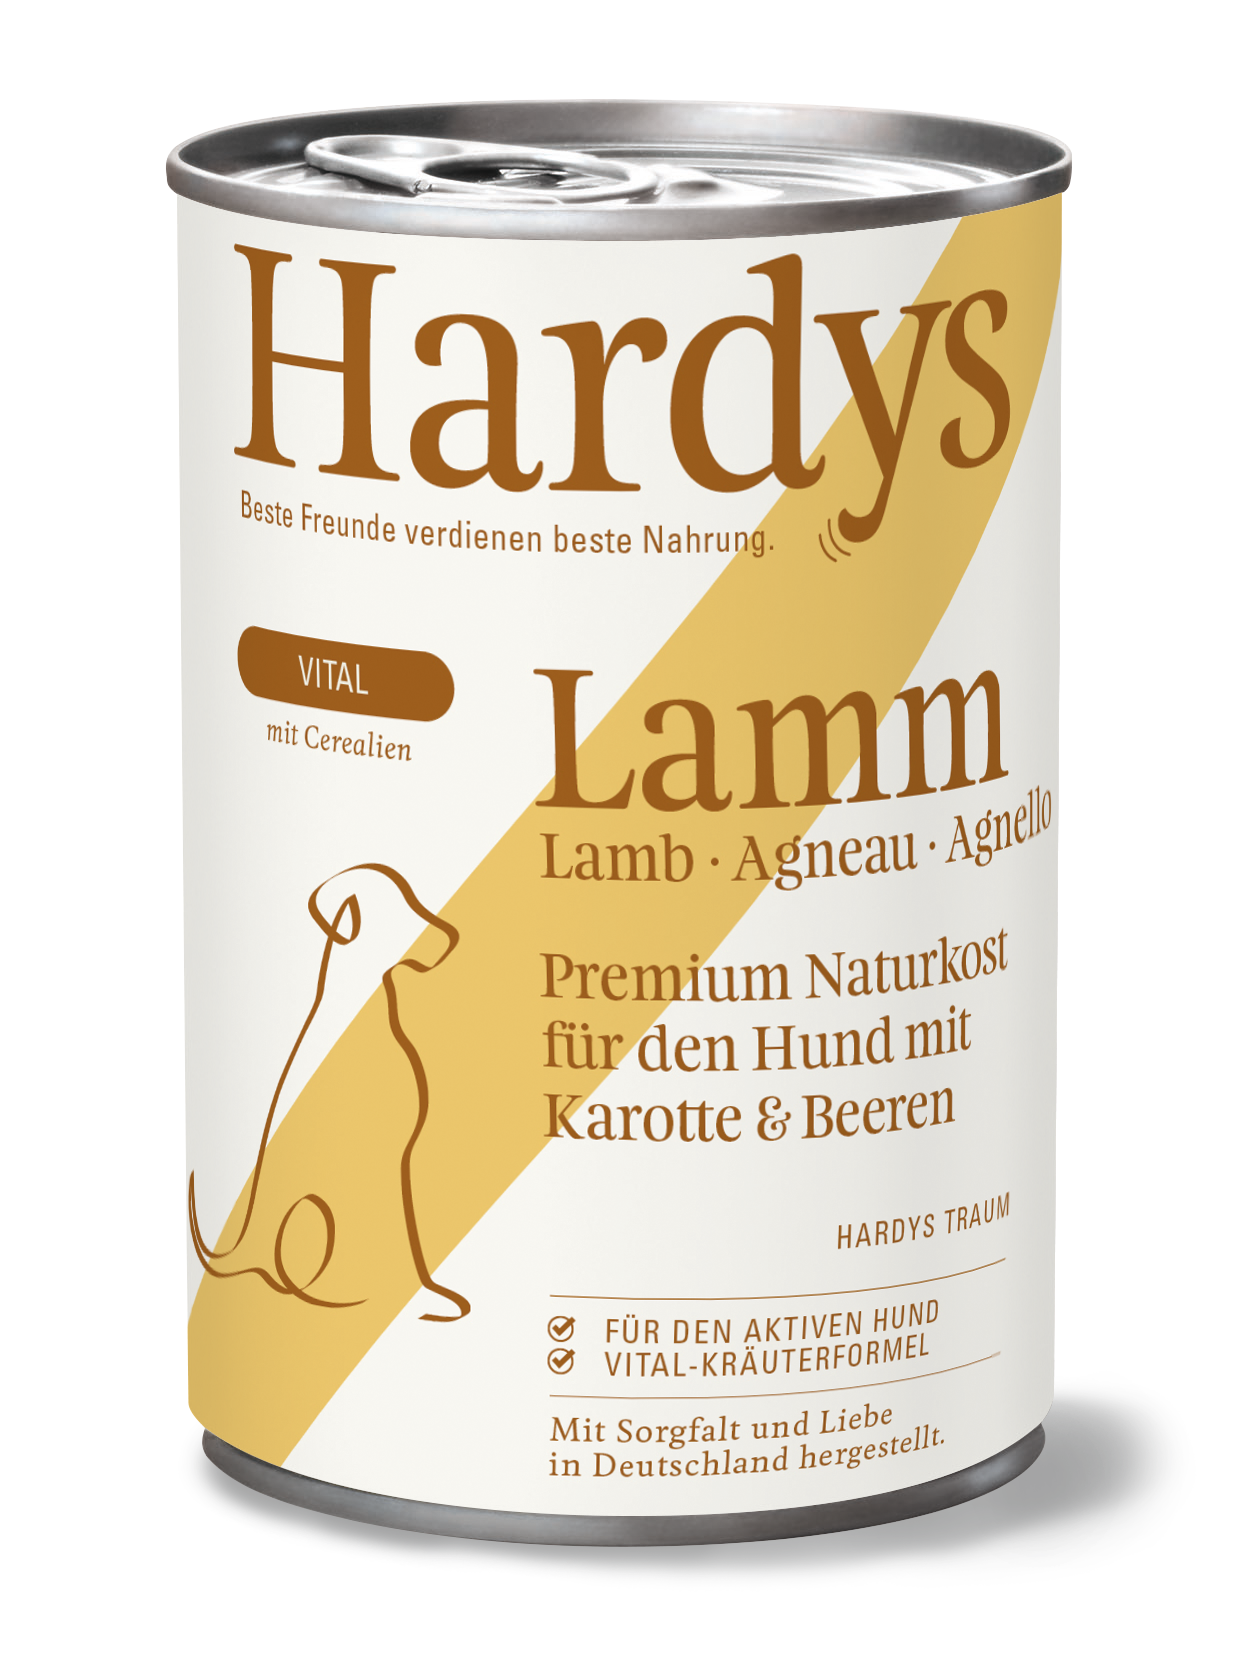 Hardys Vital Lamm mit Karotte und Beeren, 400 g